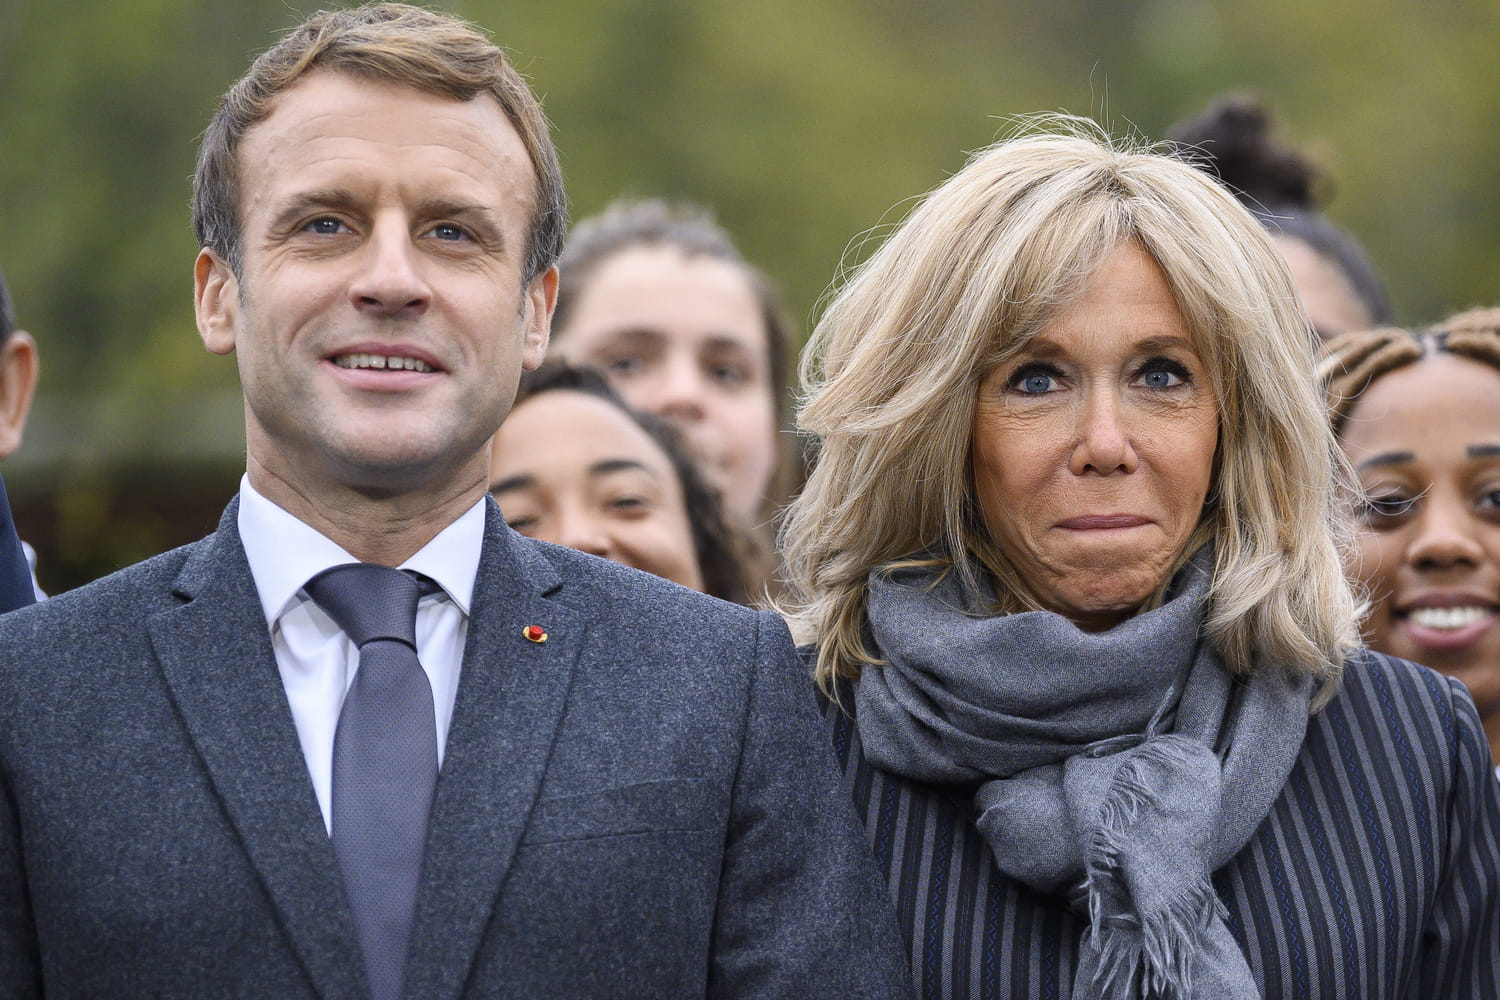 La vérité derrière les rumeurs : Emmanuel Macron défend Brigitte contre les fausses accusations